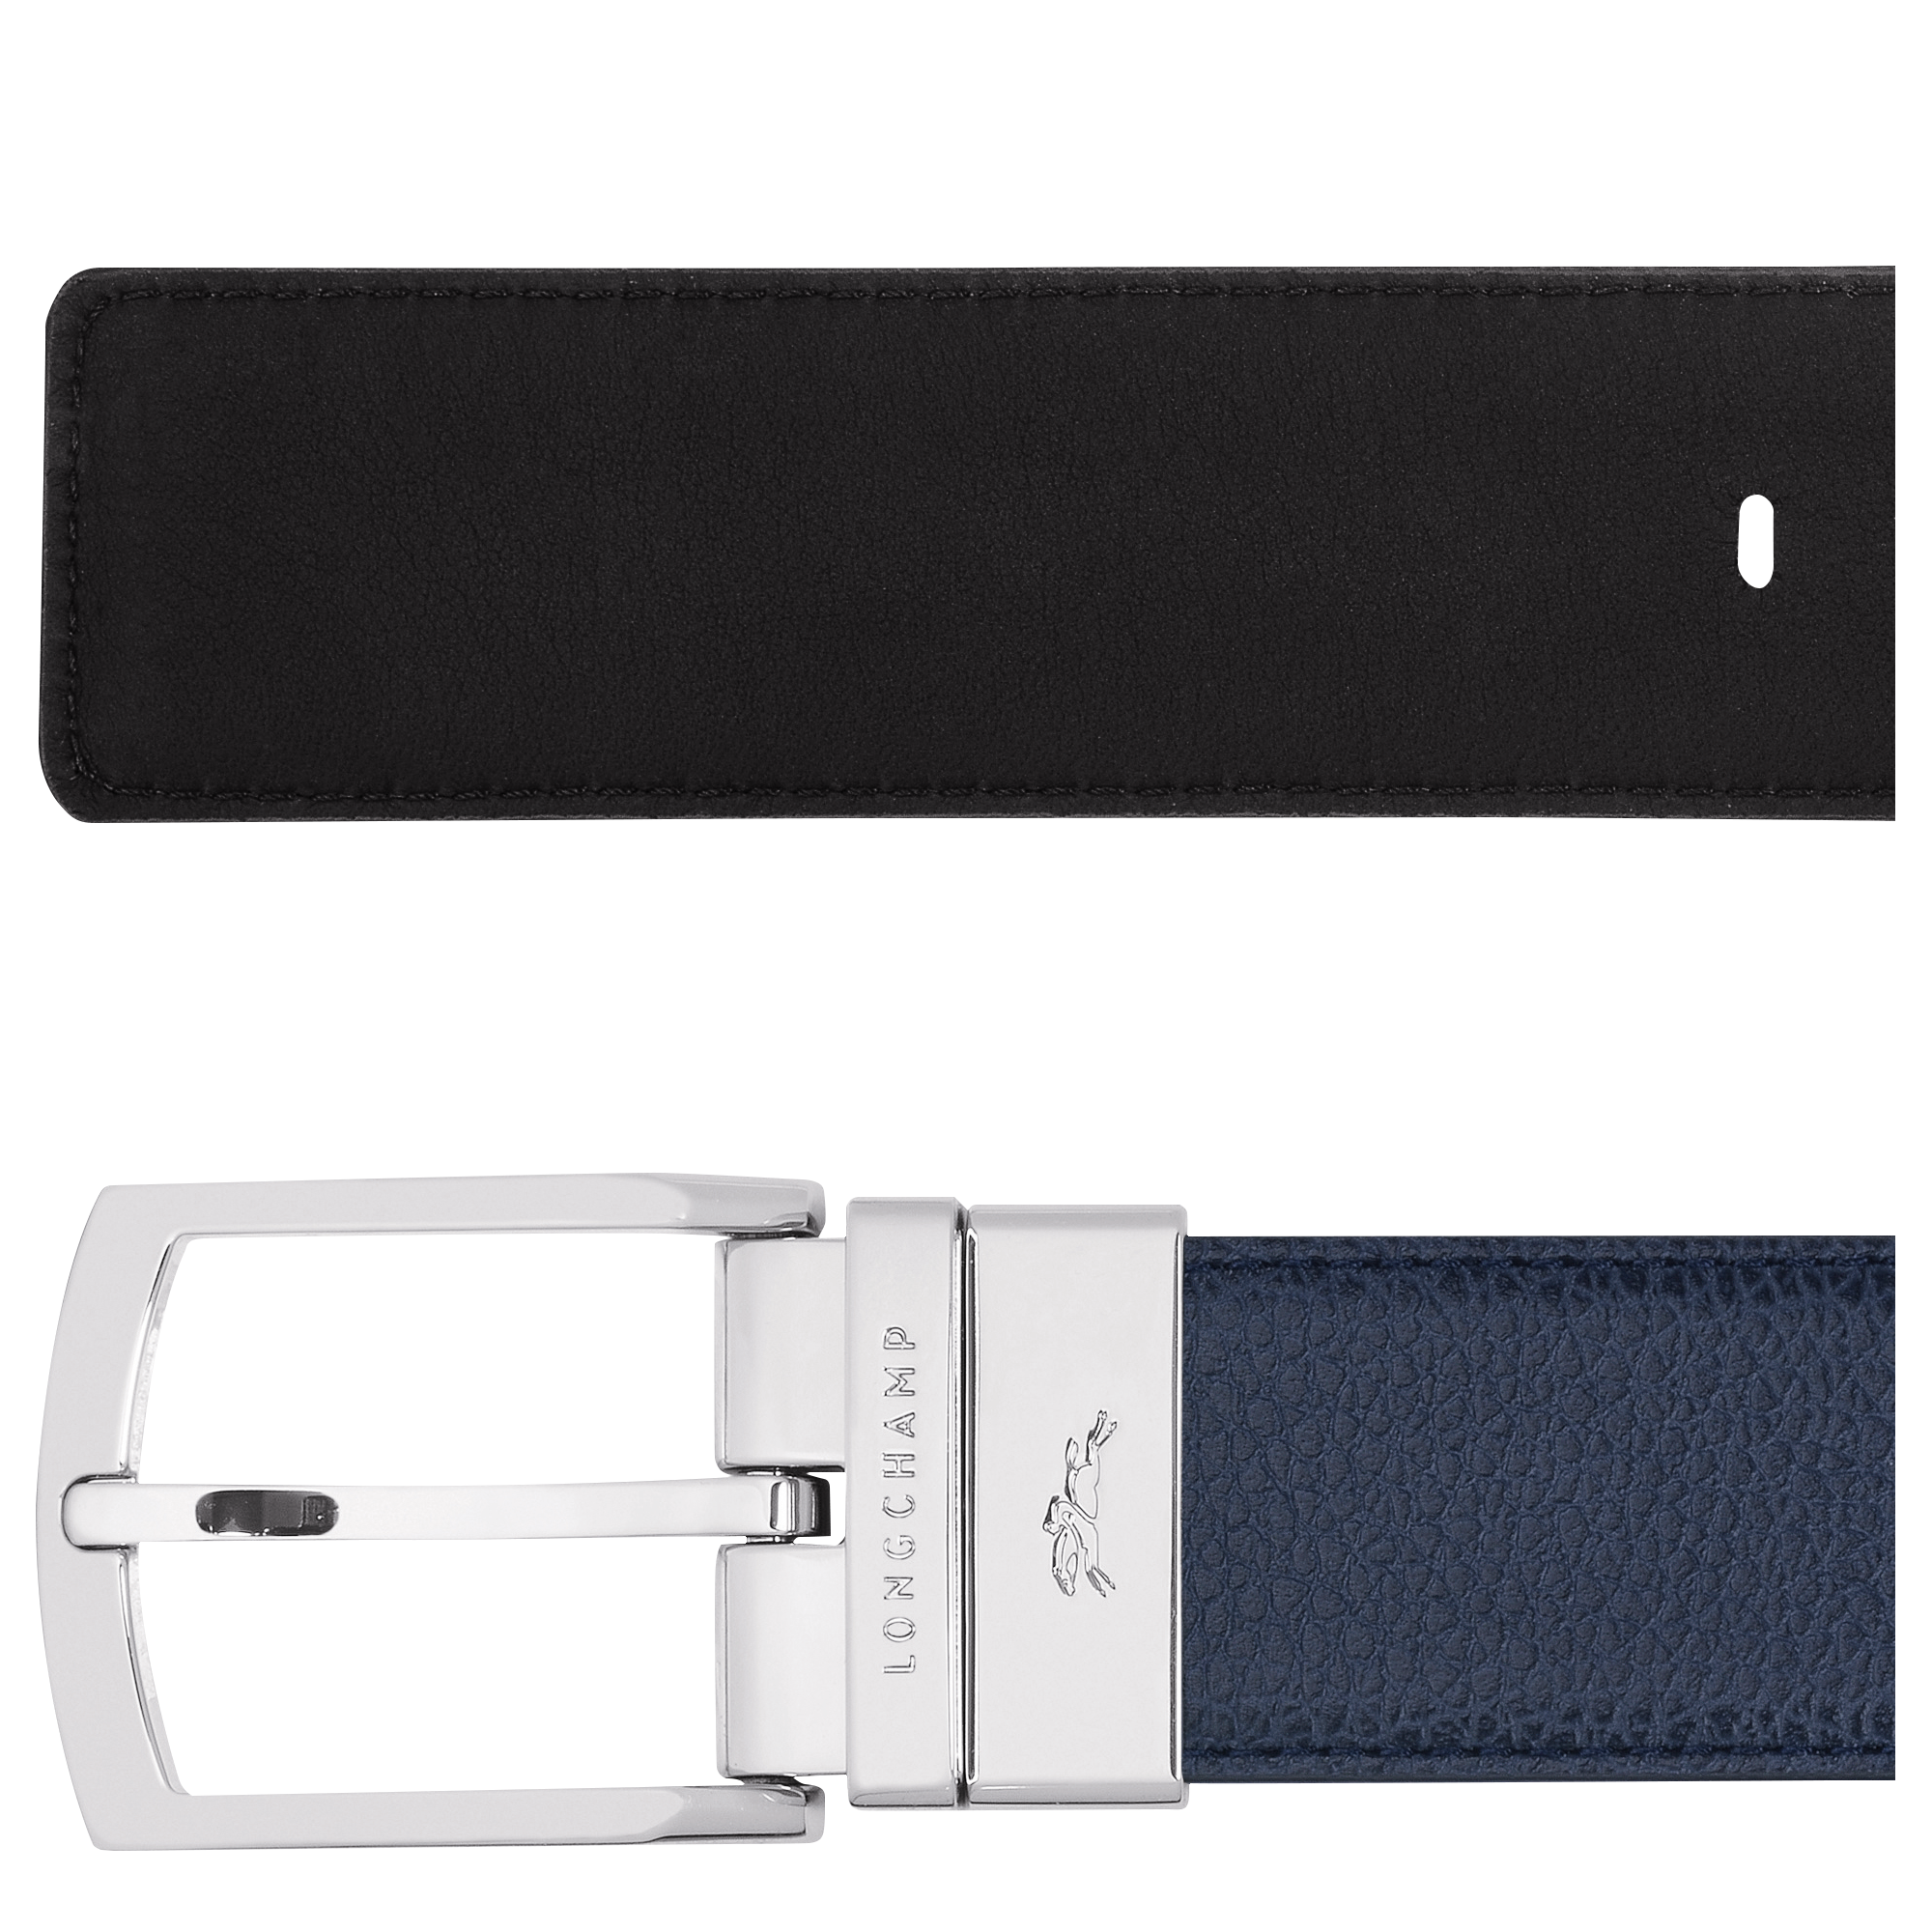 Le Foulonné Men's belt, Navy/Black